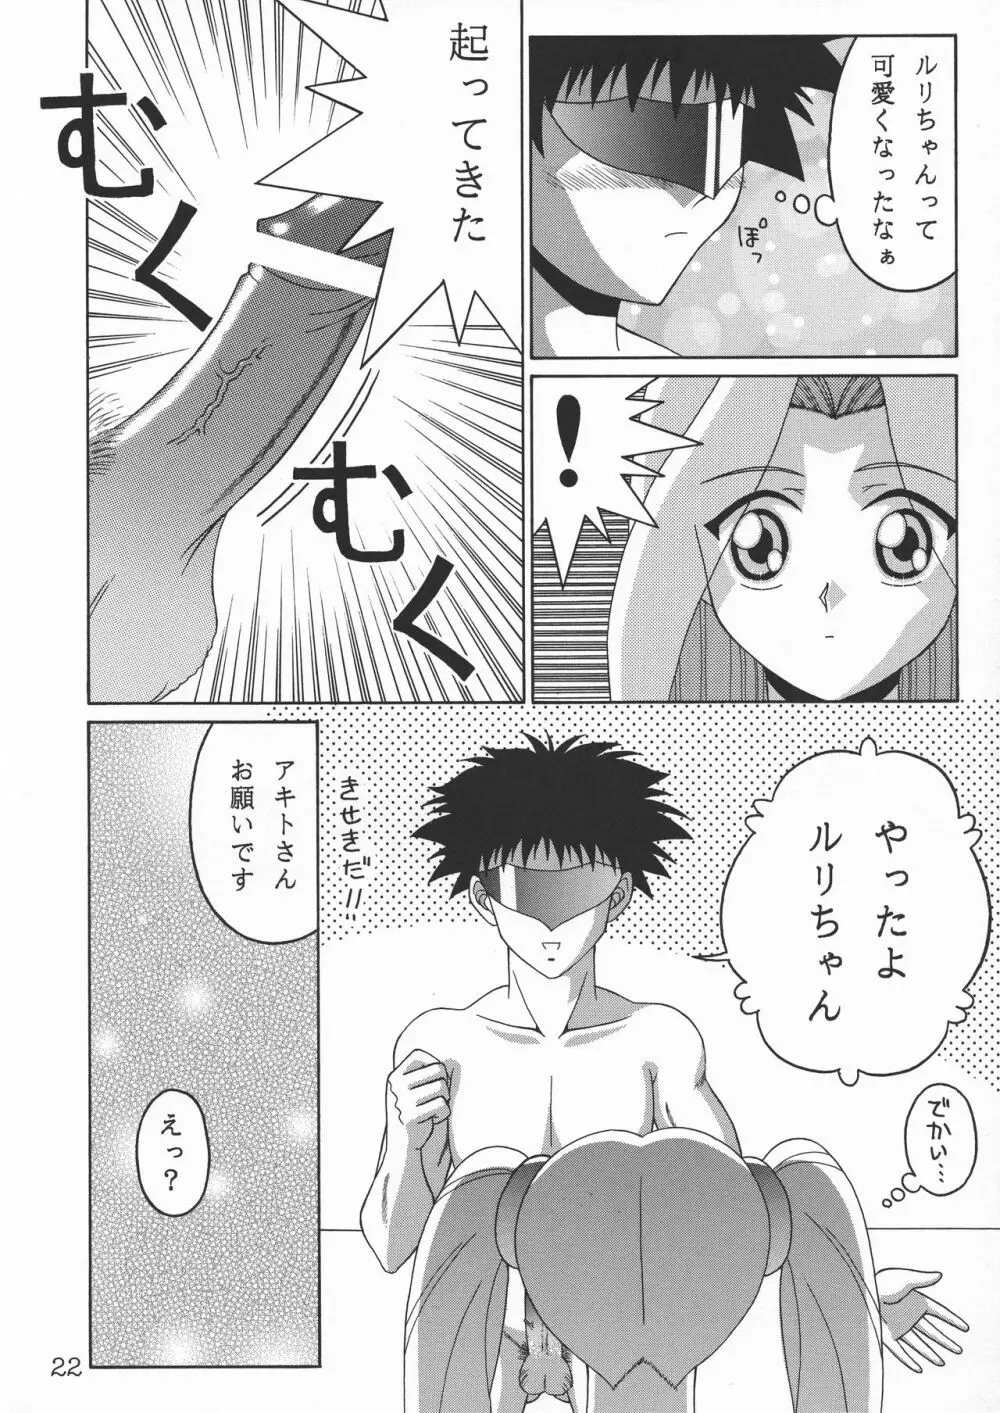 TOKUTEI 9 22ページ